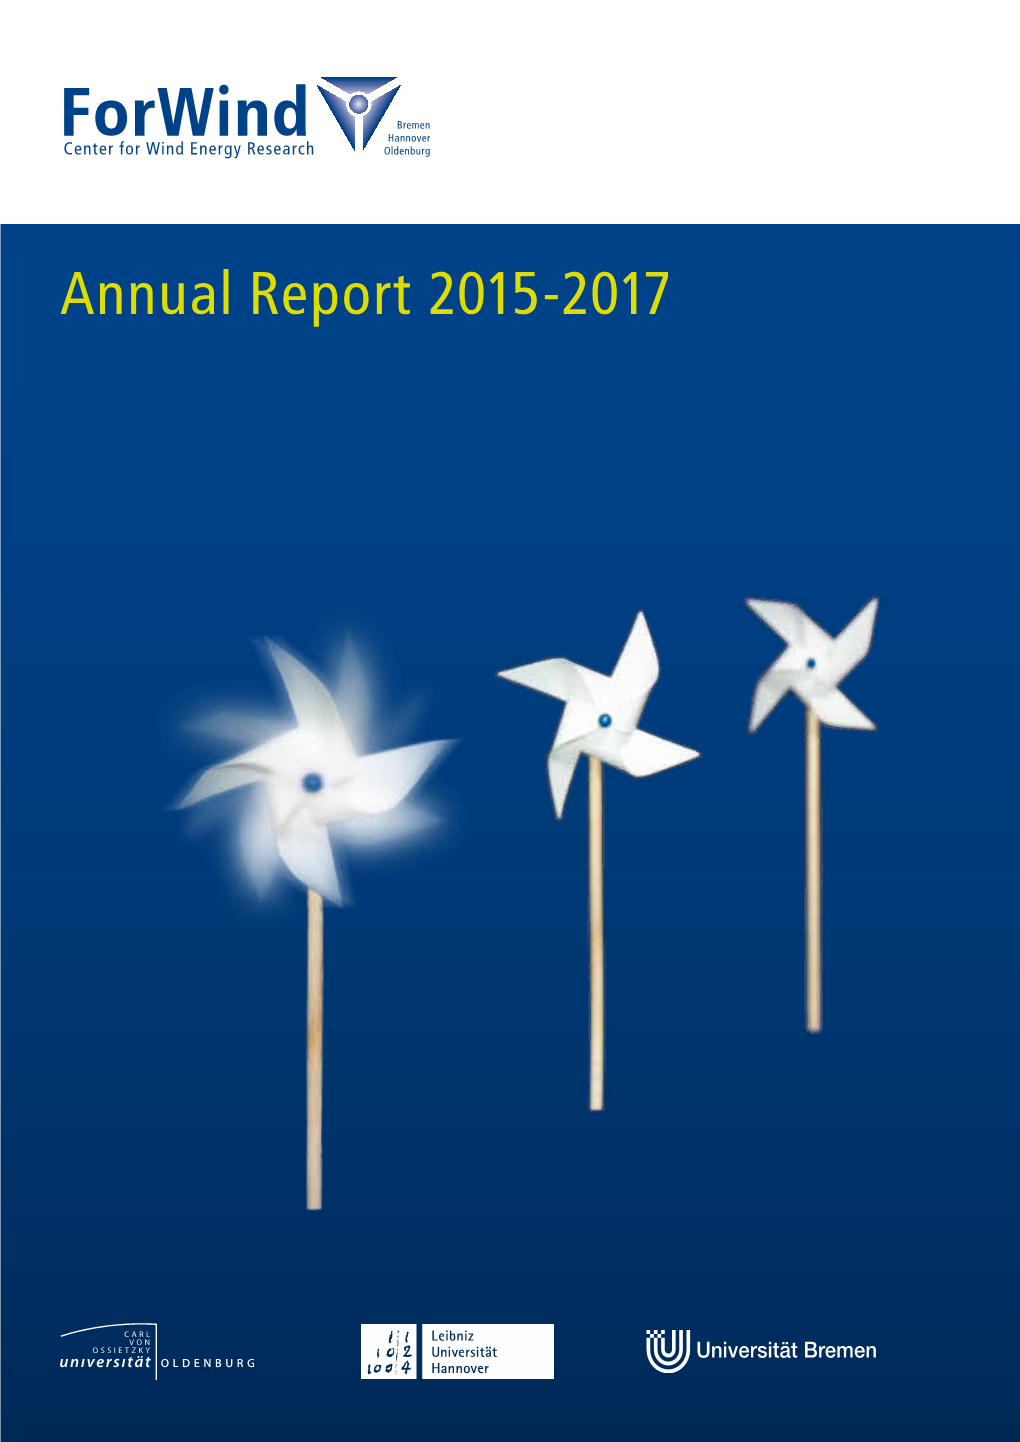 Annual Report 2015-2017 Annual Report 2015-2017 Annual Report 2015-20171